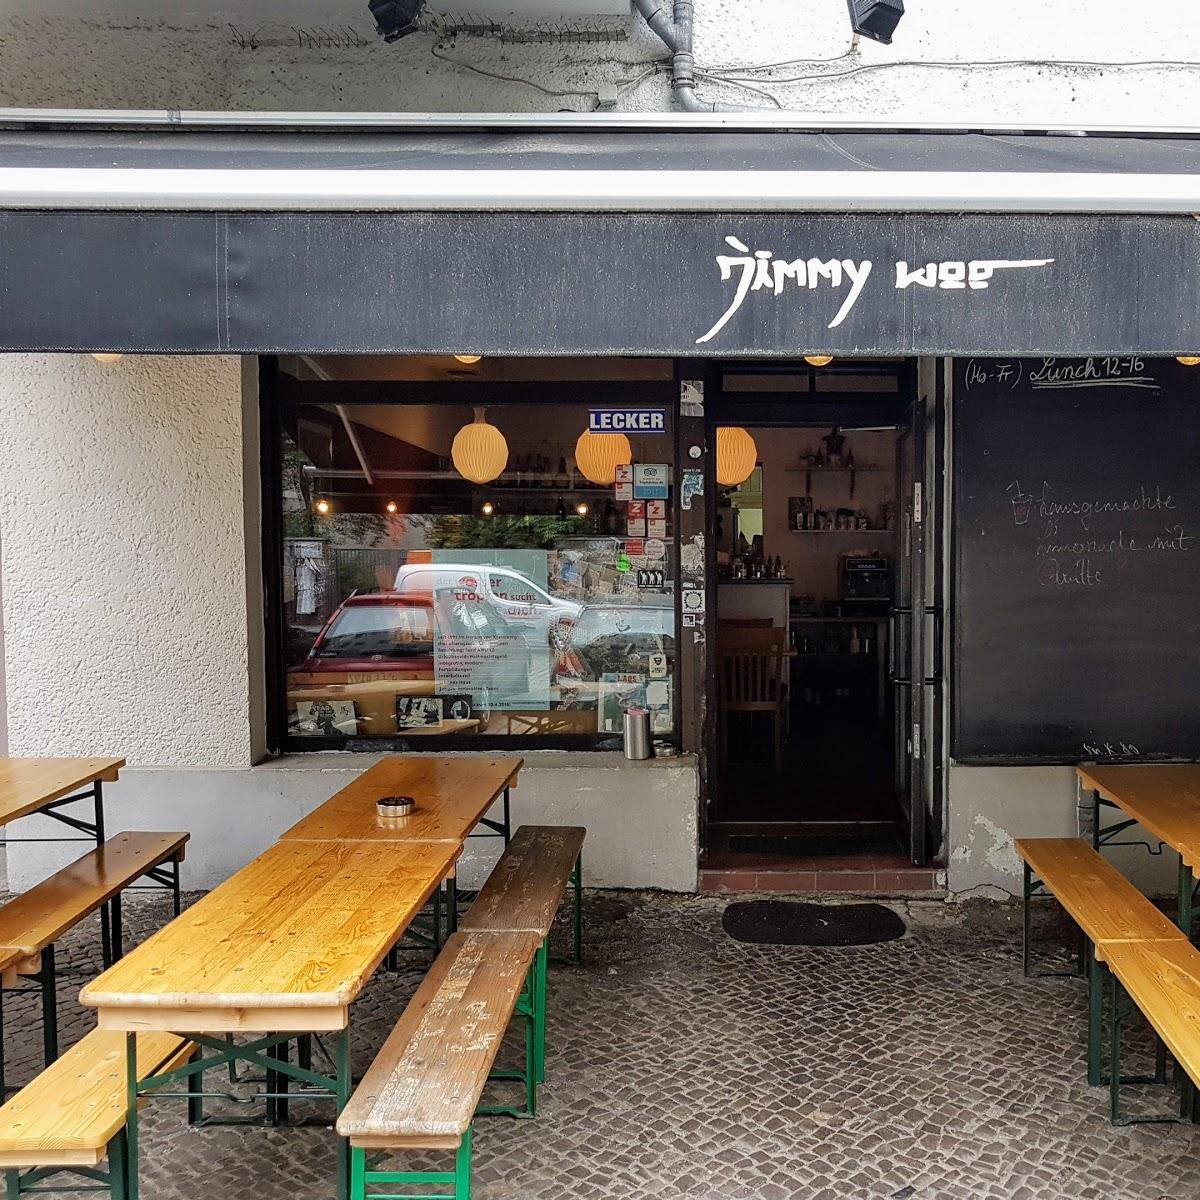 Restaurant "Jimmy Woo Bar und Restaurant" in Berlin